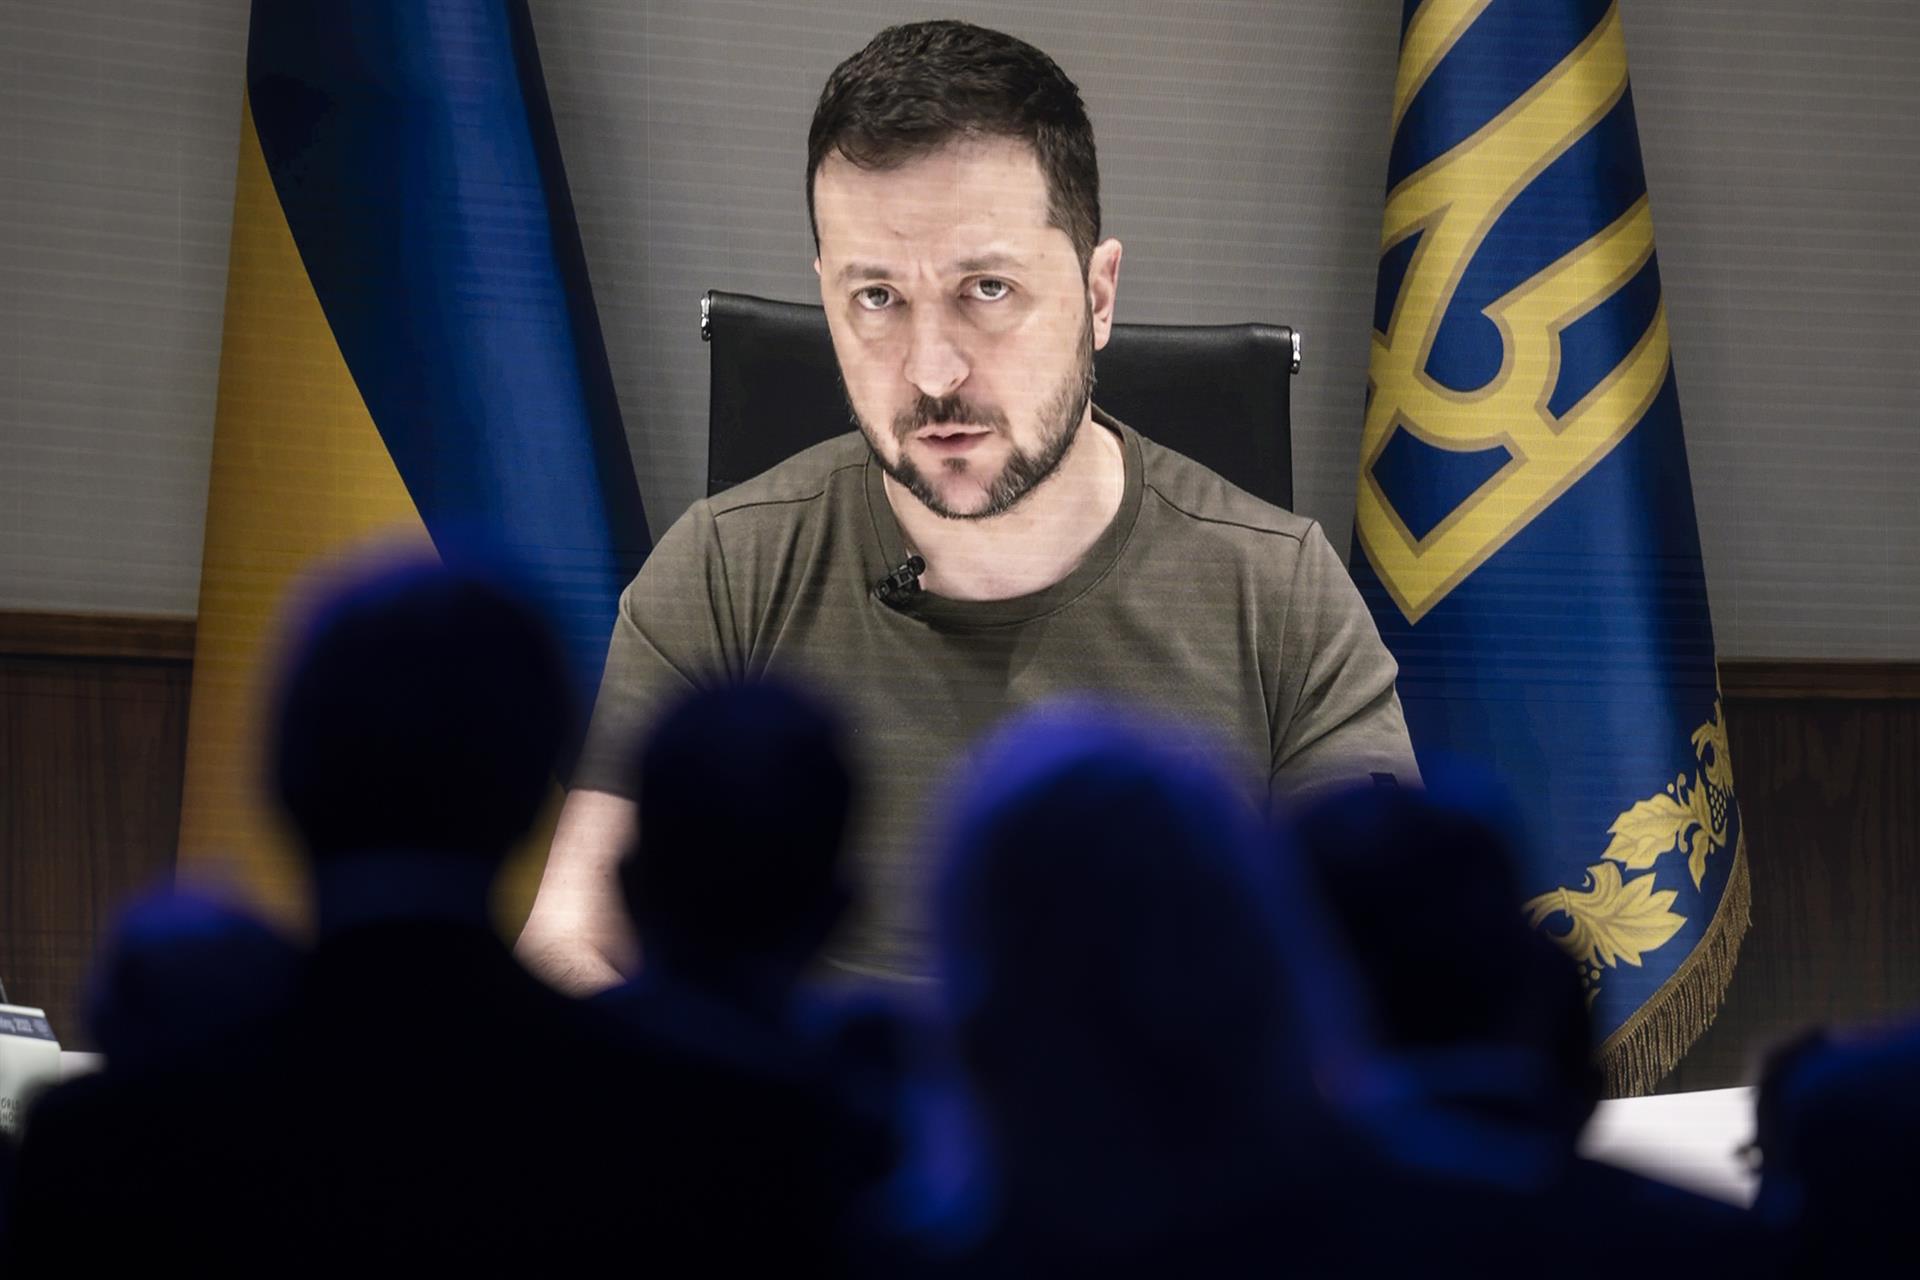 Día 111 de la invasión: el Donbás es “simplemente aterrador”, dice Zelenski